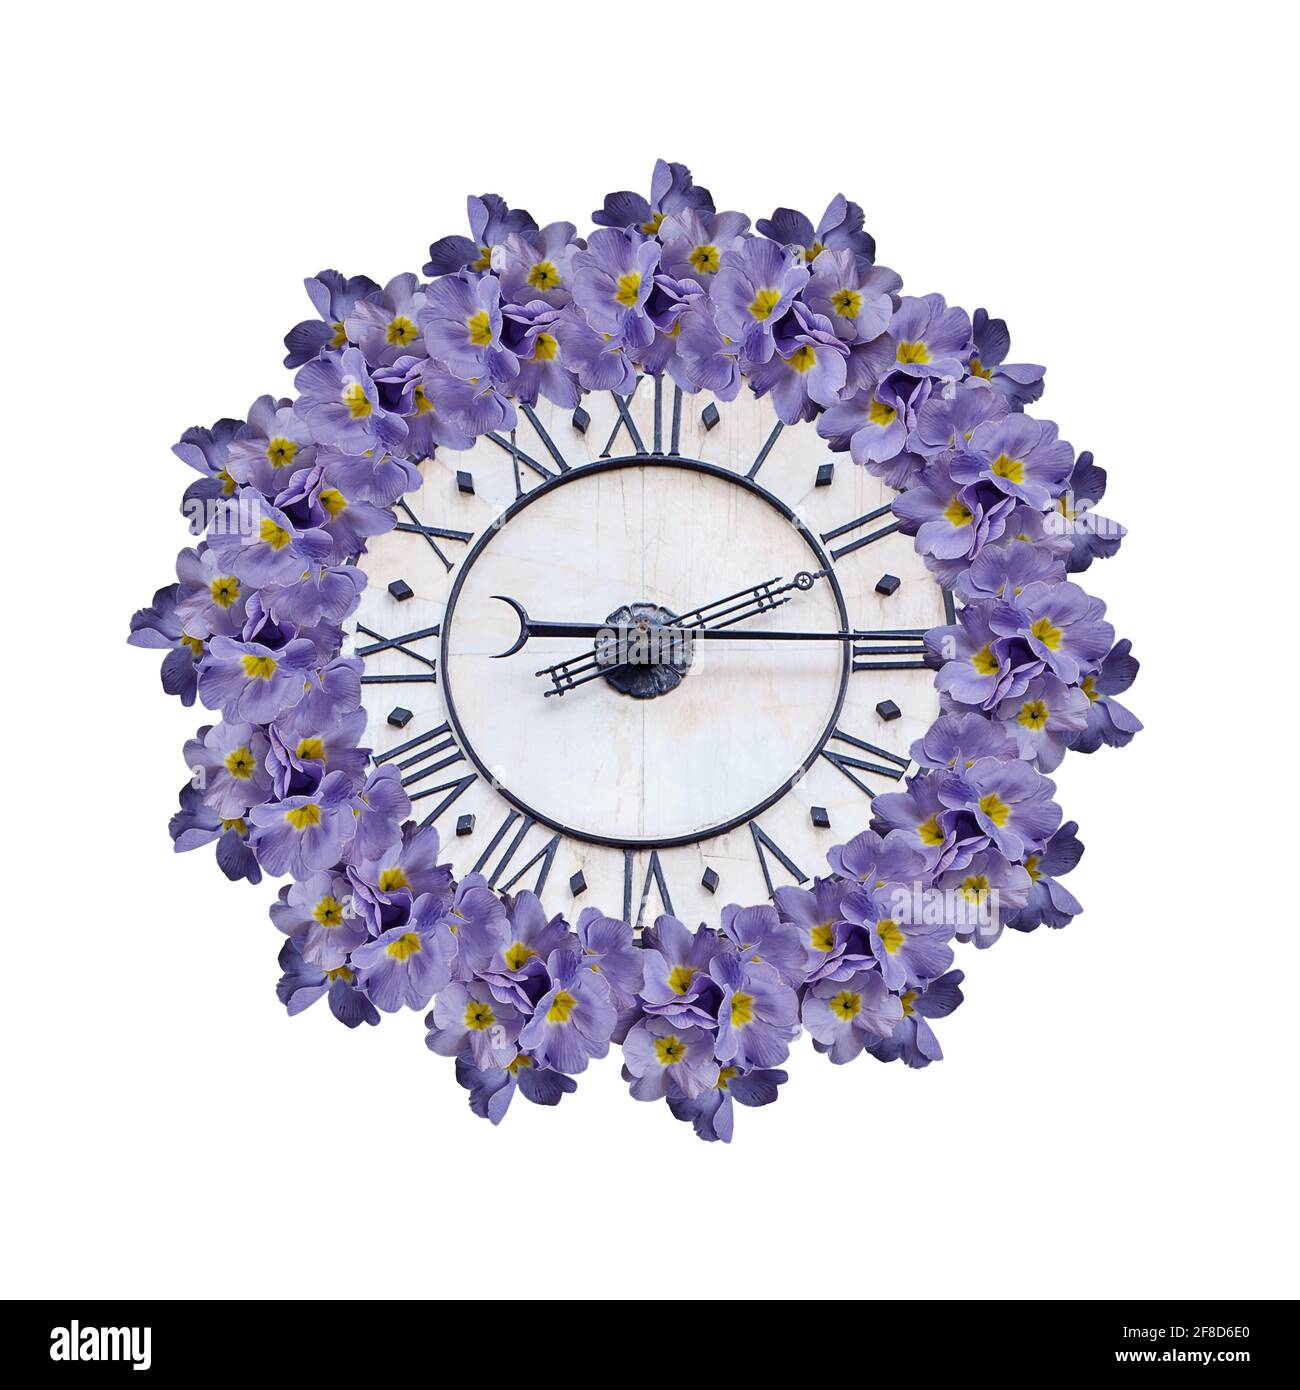 Vieux cadran d'horloge vintage isolé sur fond blanc. Bleu avec le milieu jaune fleurs printanières en forme de cadre rond. Style rétro. Banque D'Images